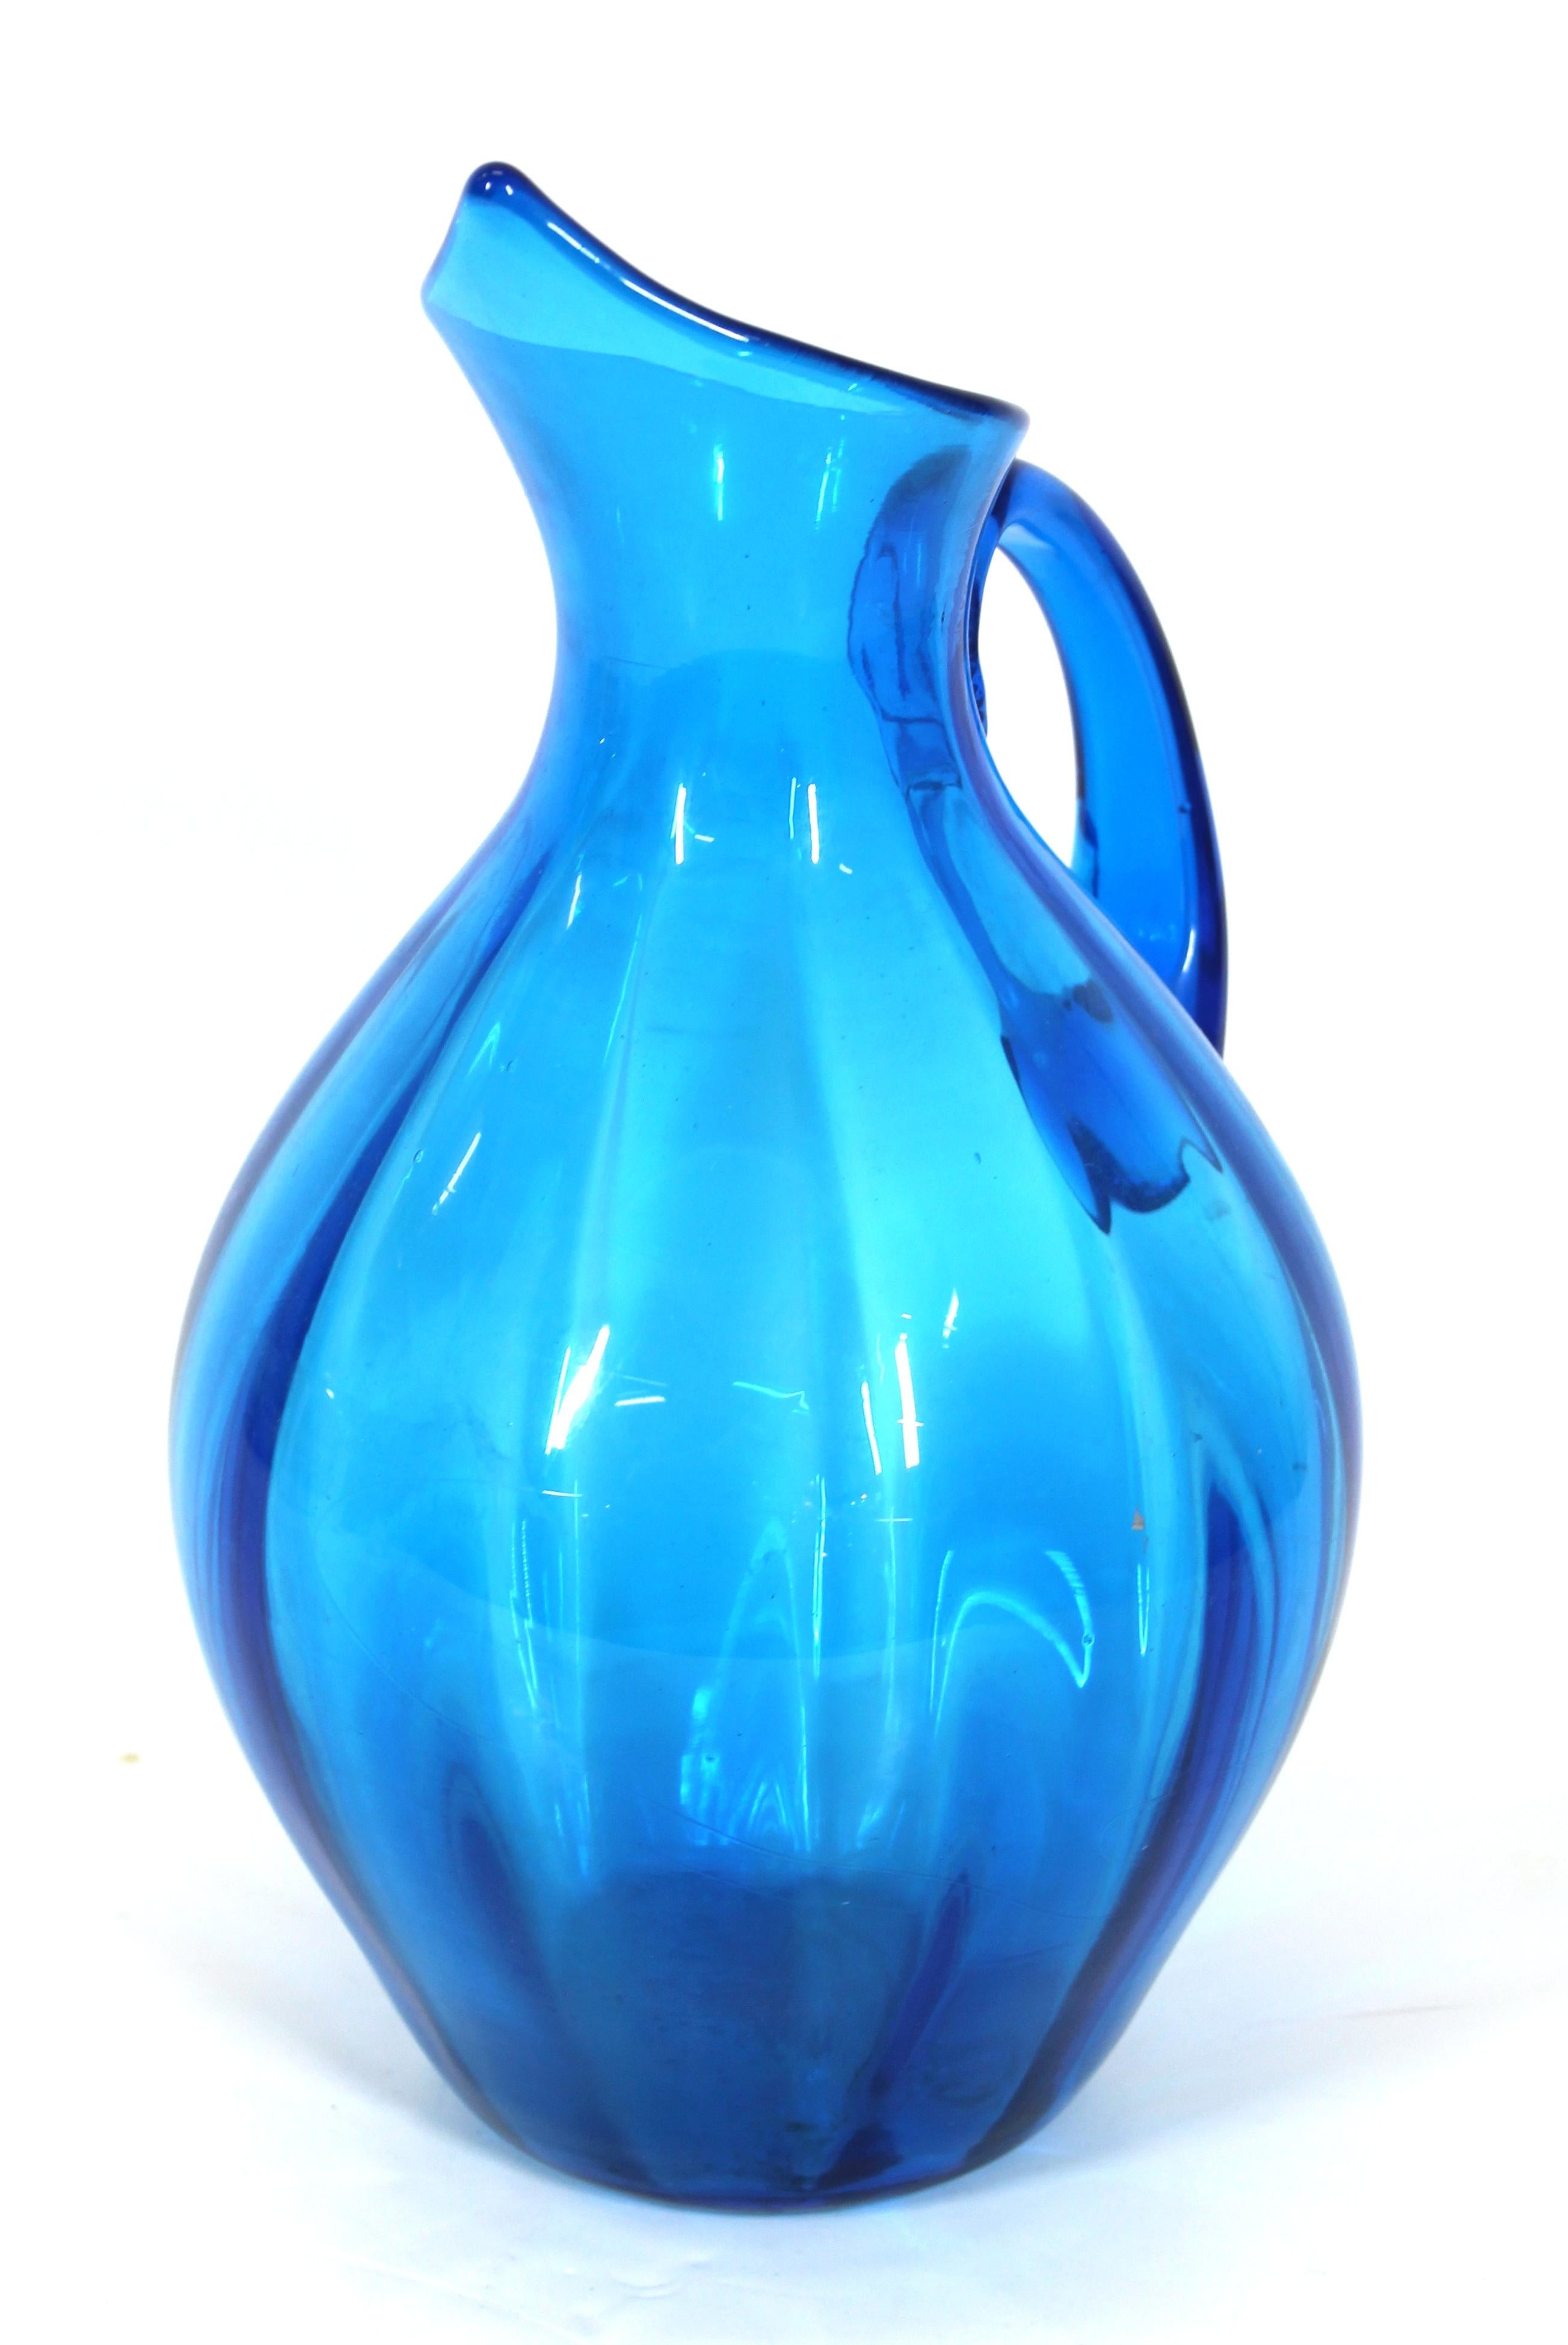 Blenko Mid-Century Modern blue hand-blown glass pitcher, unmarked. Measures: 13